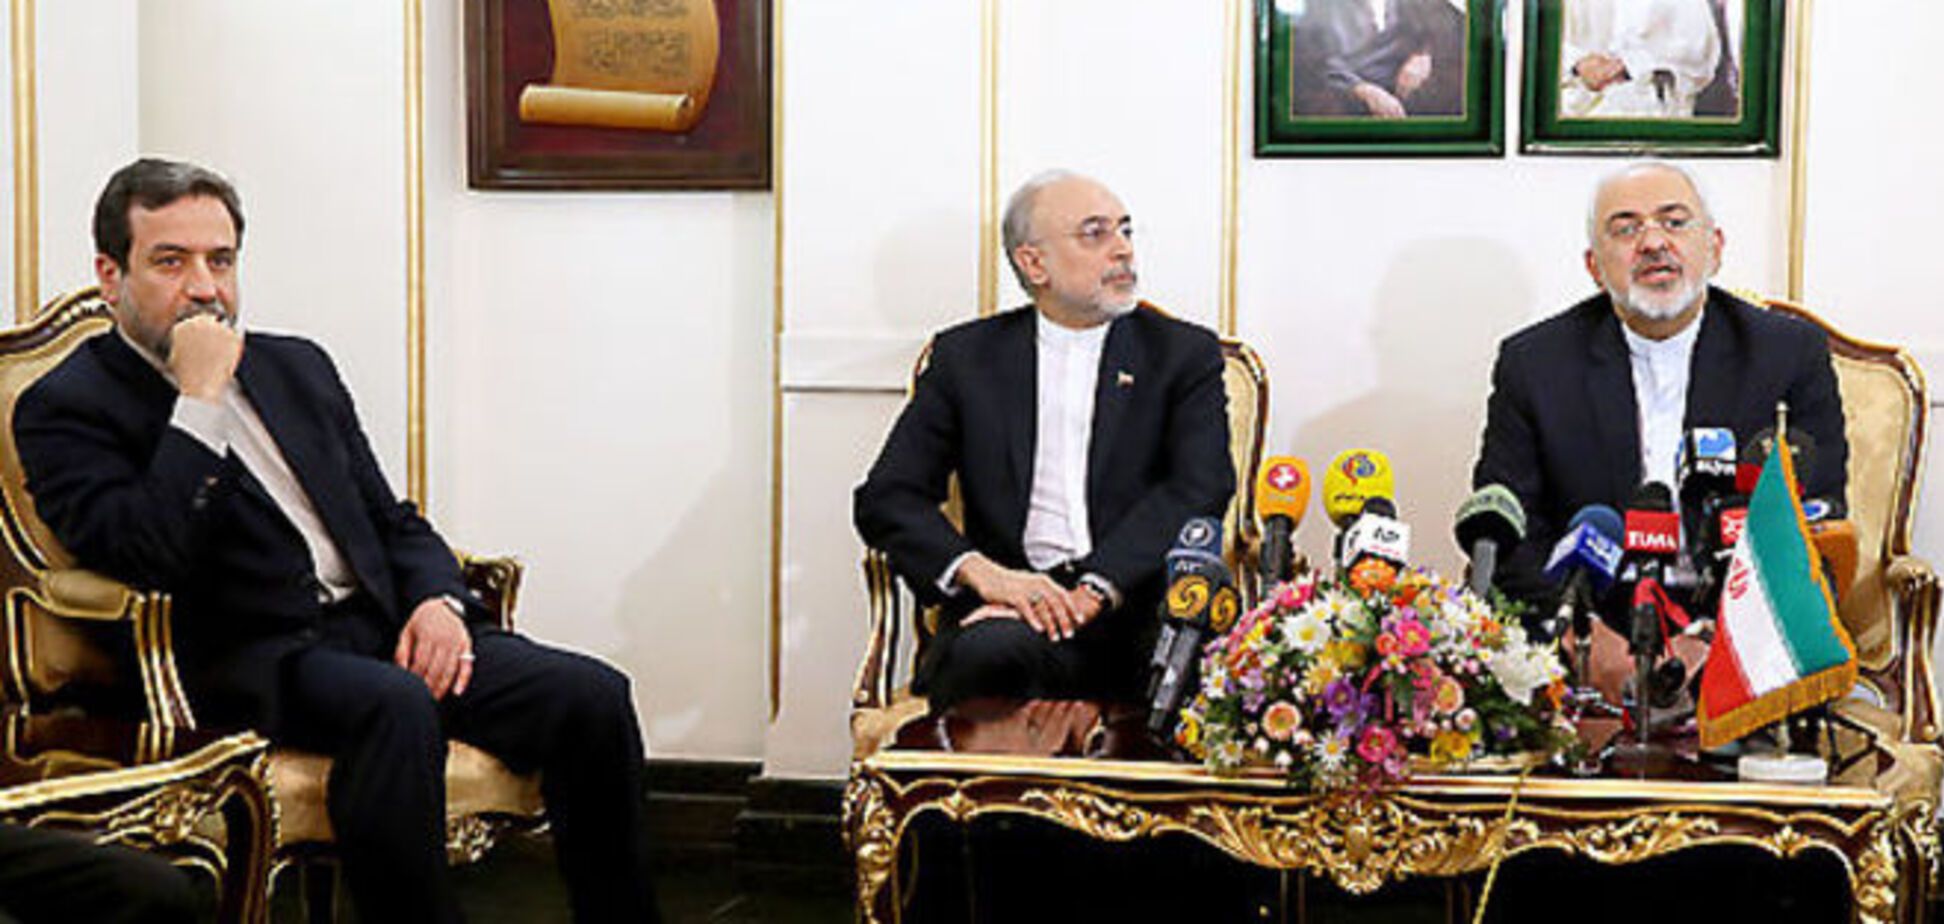 Какова выгода России от сделки с Ираном